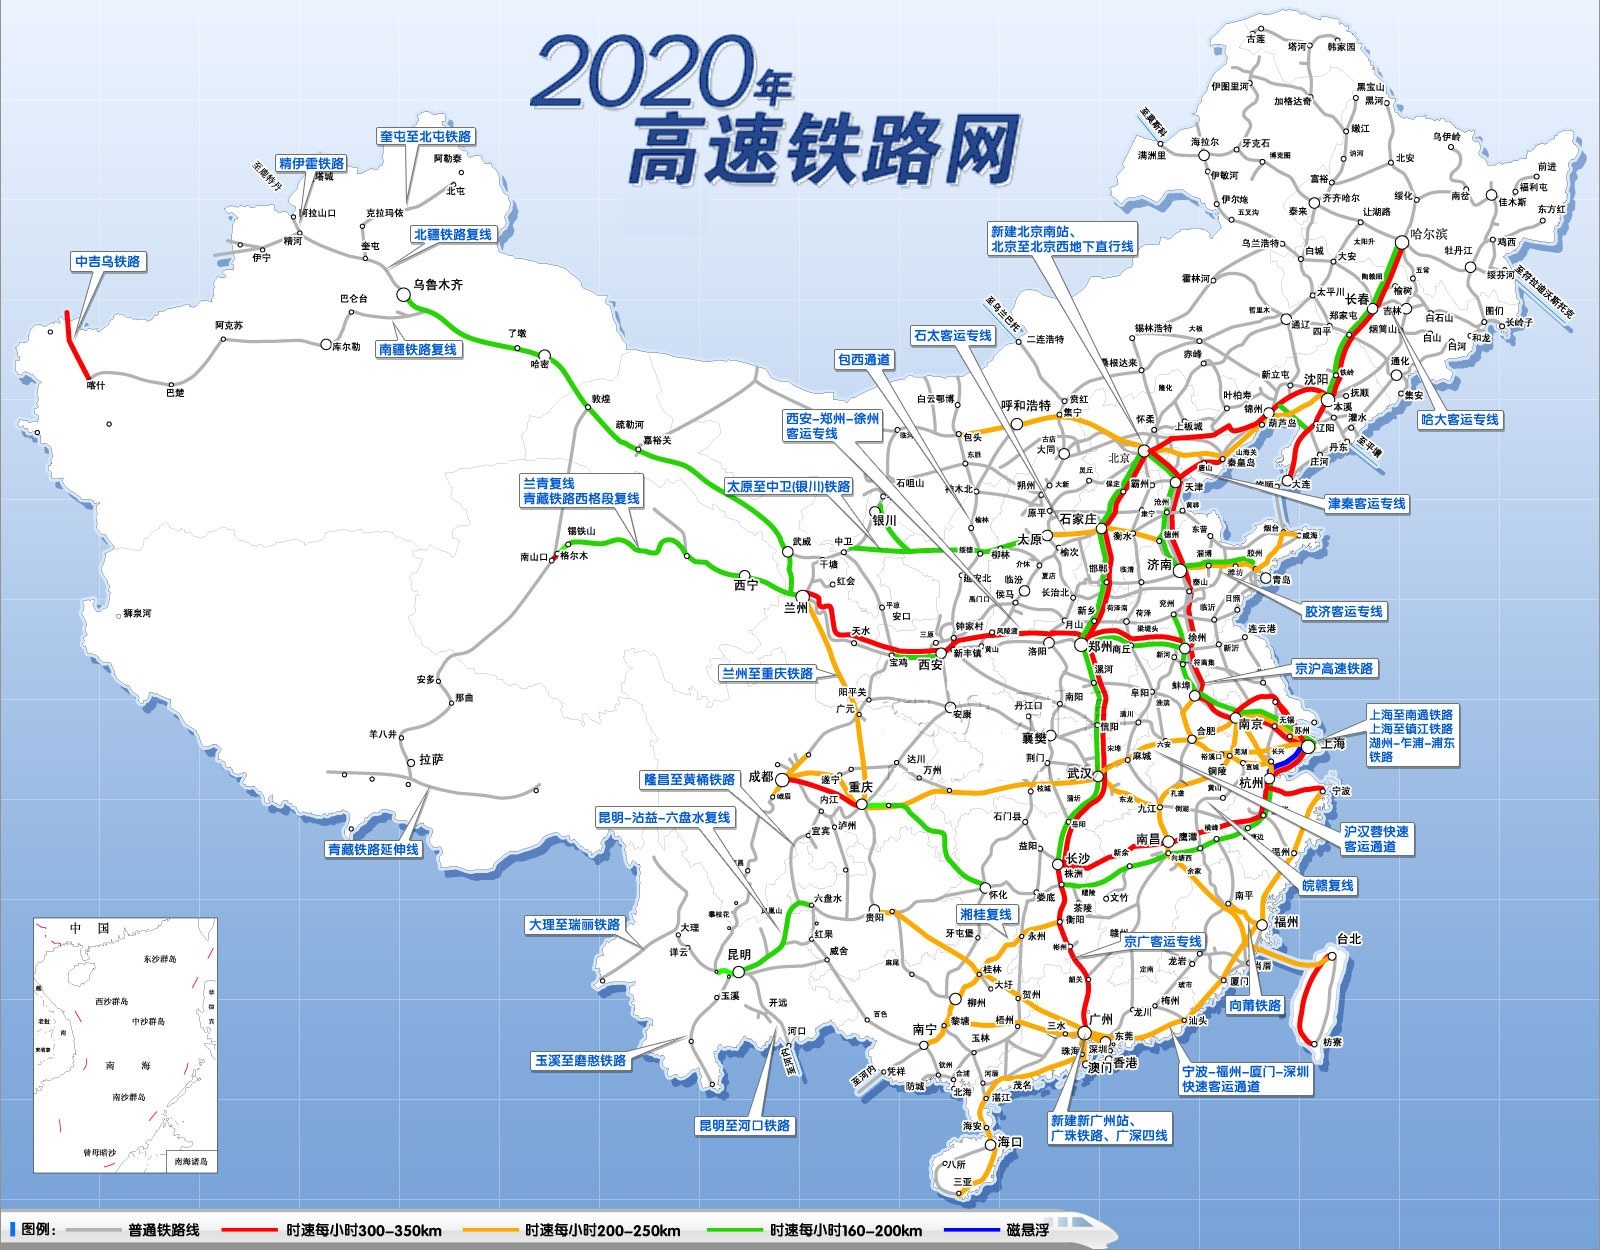 中国高速铁路网分布图我国产业结构呈现三,二,一格局,是我国正在